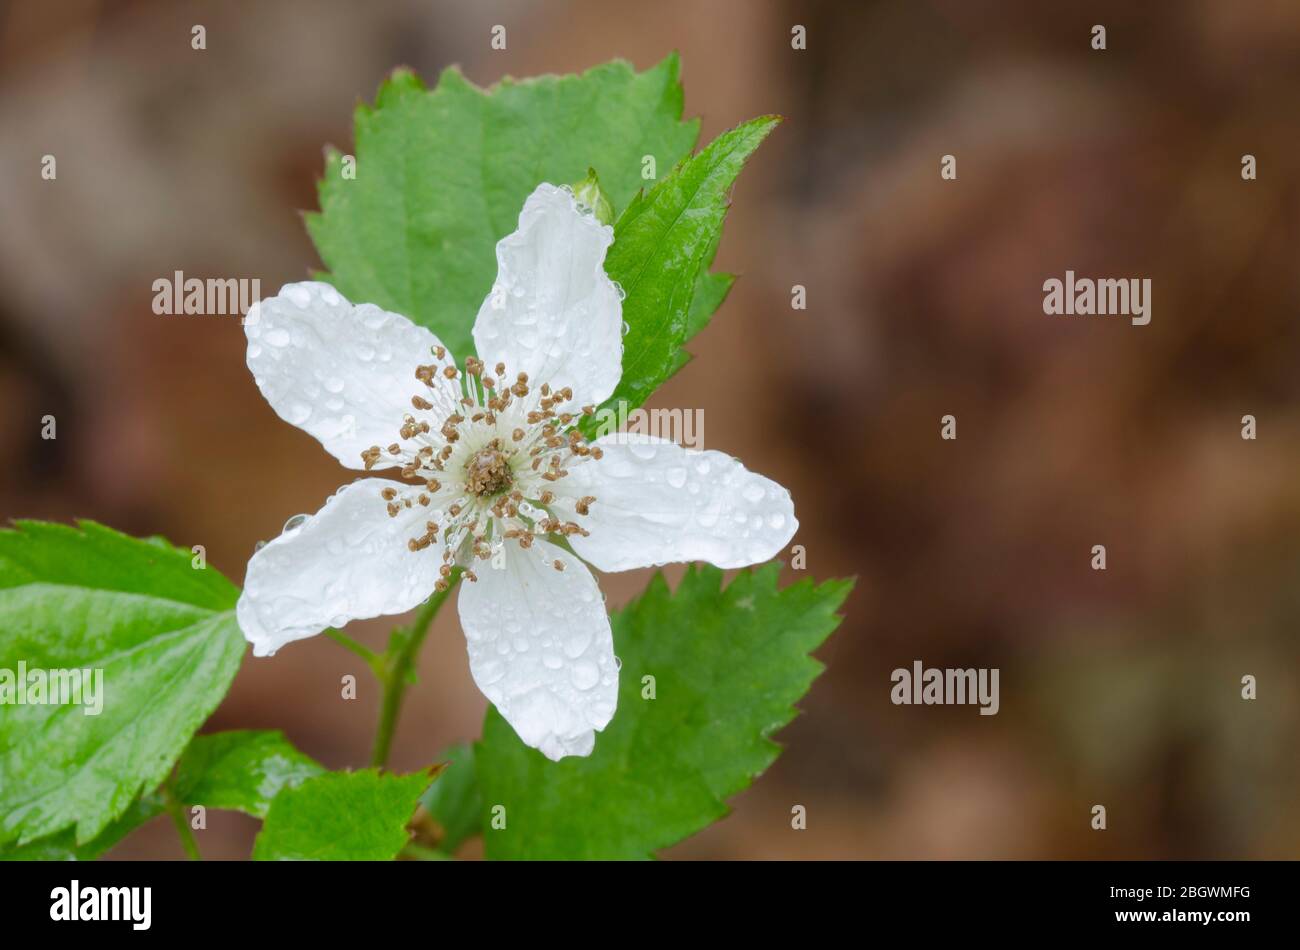 BlackBerry, Rubus sp., s'épanouit avec des gouttes de pluie Banque D'Images